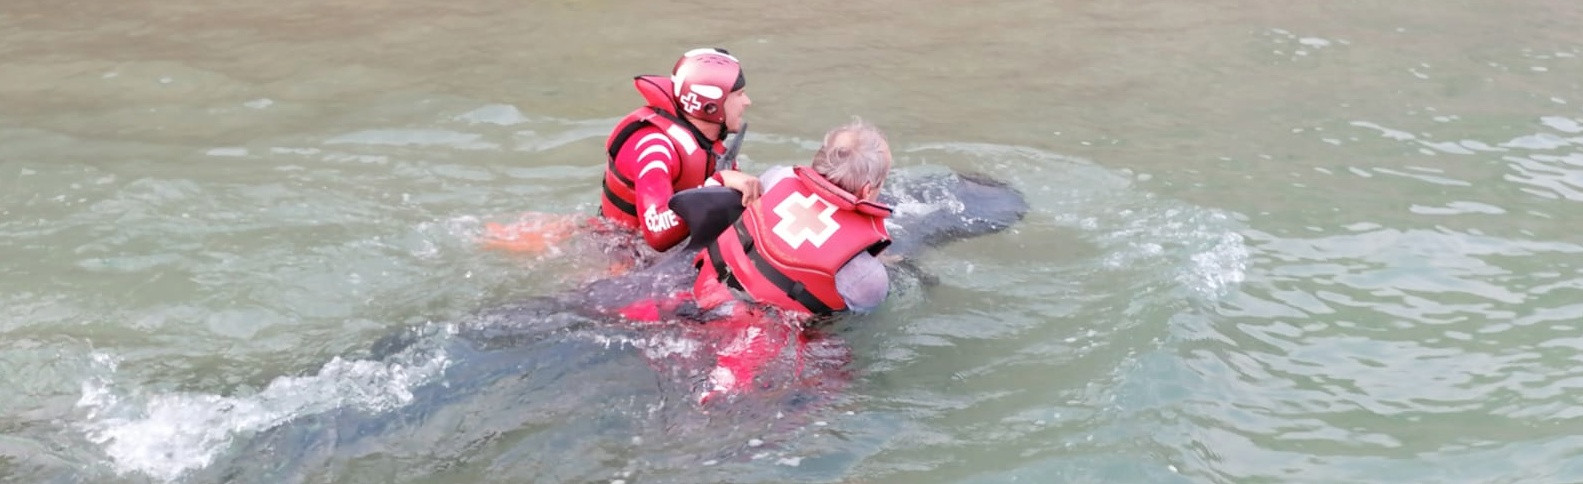 Atípico rescate a un delfín en una playa de Guipúzcoa